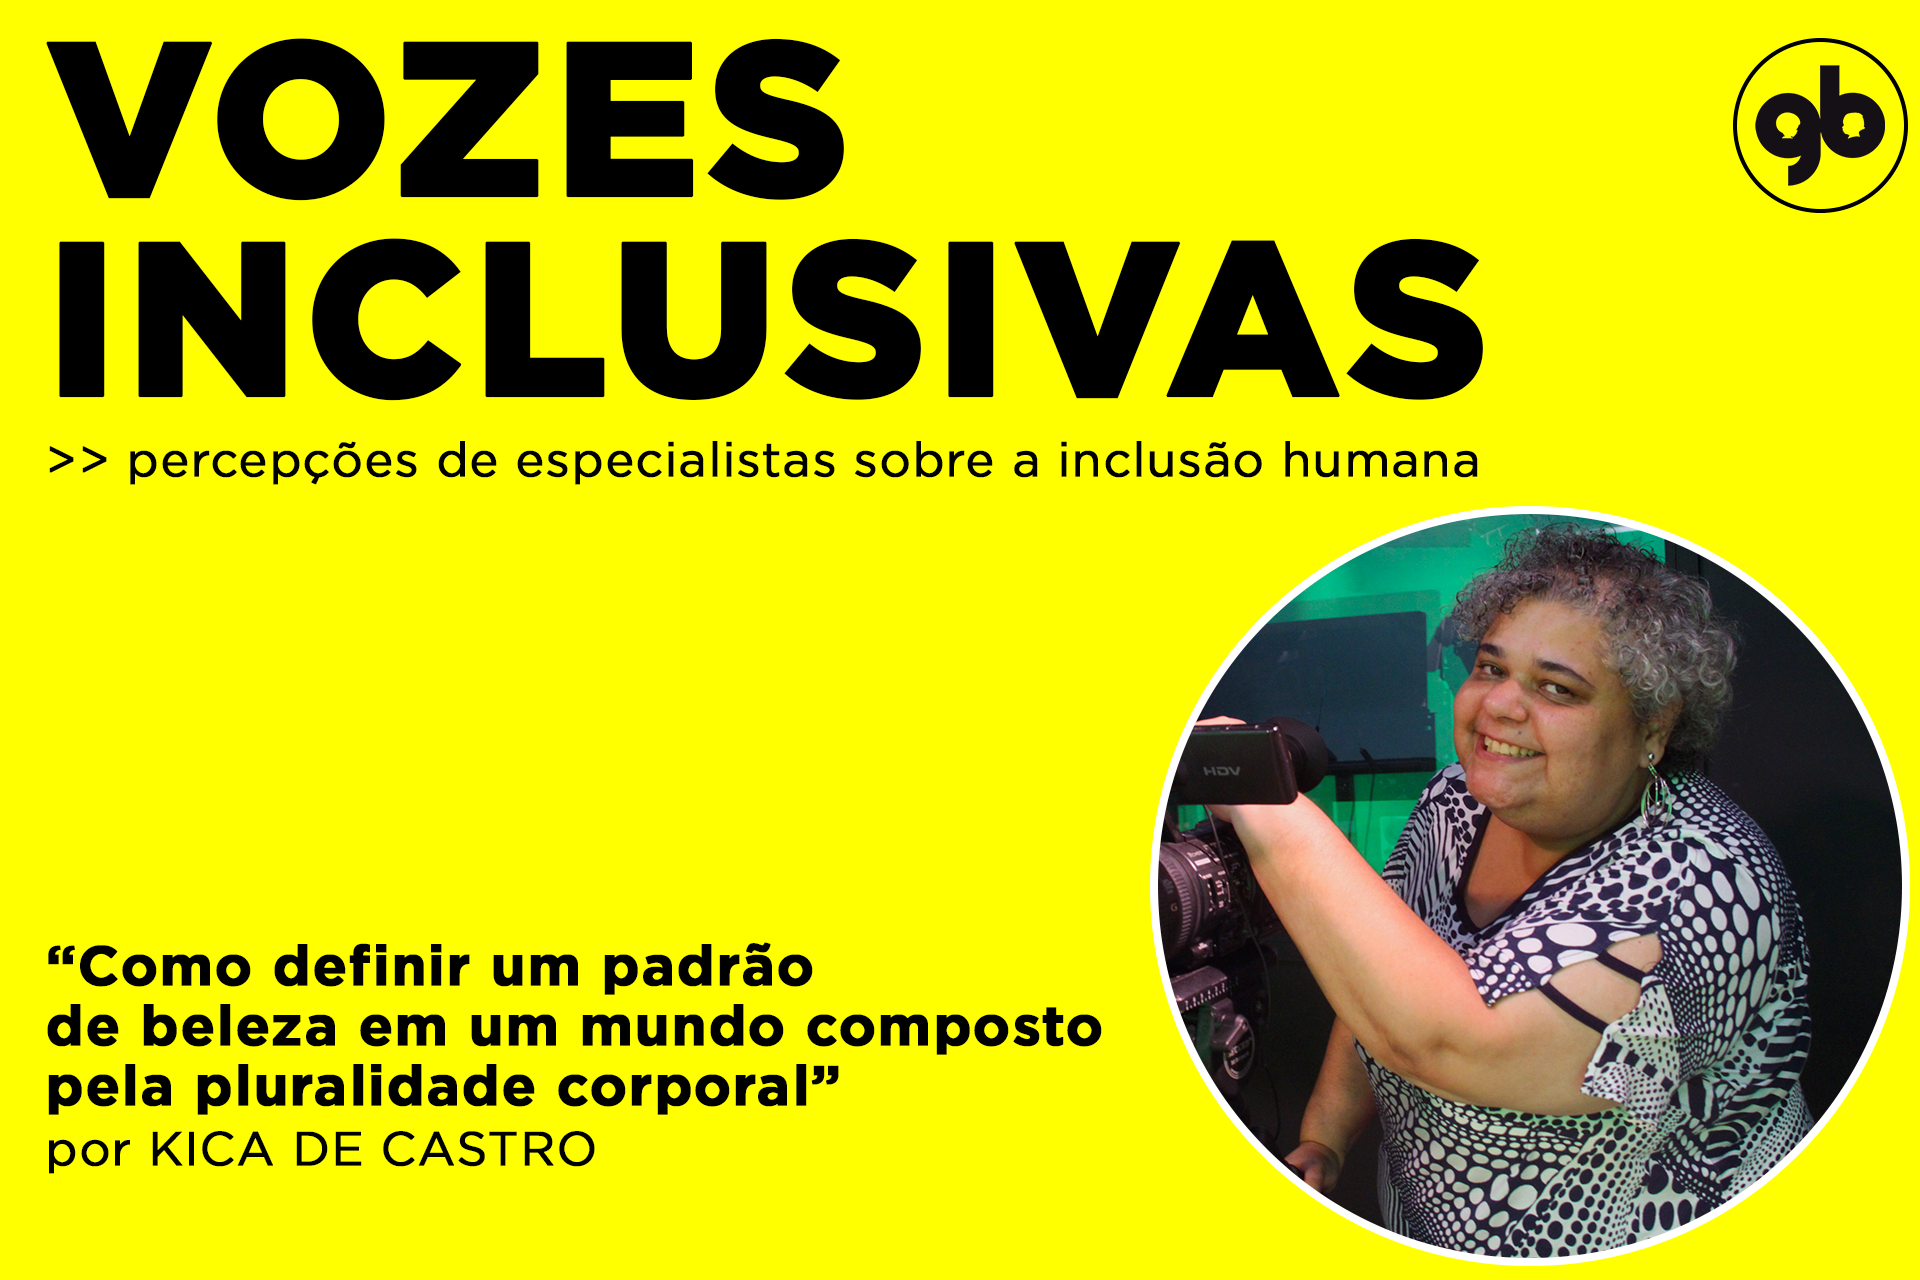 sobre fundo amarelo, título Vozes inclusivas em preto com foto de Kica à direita